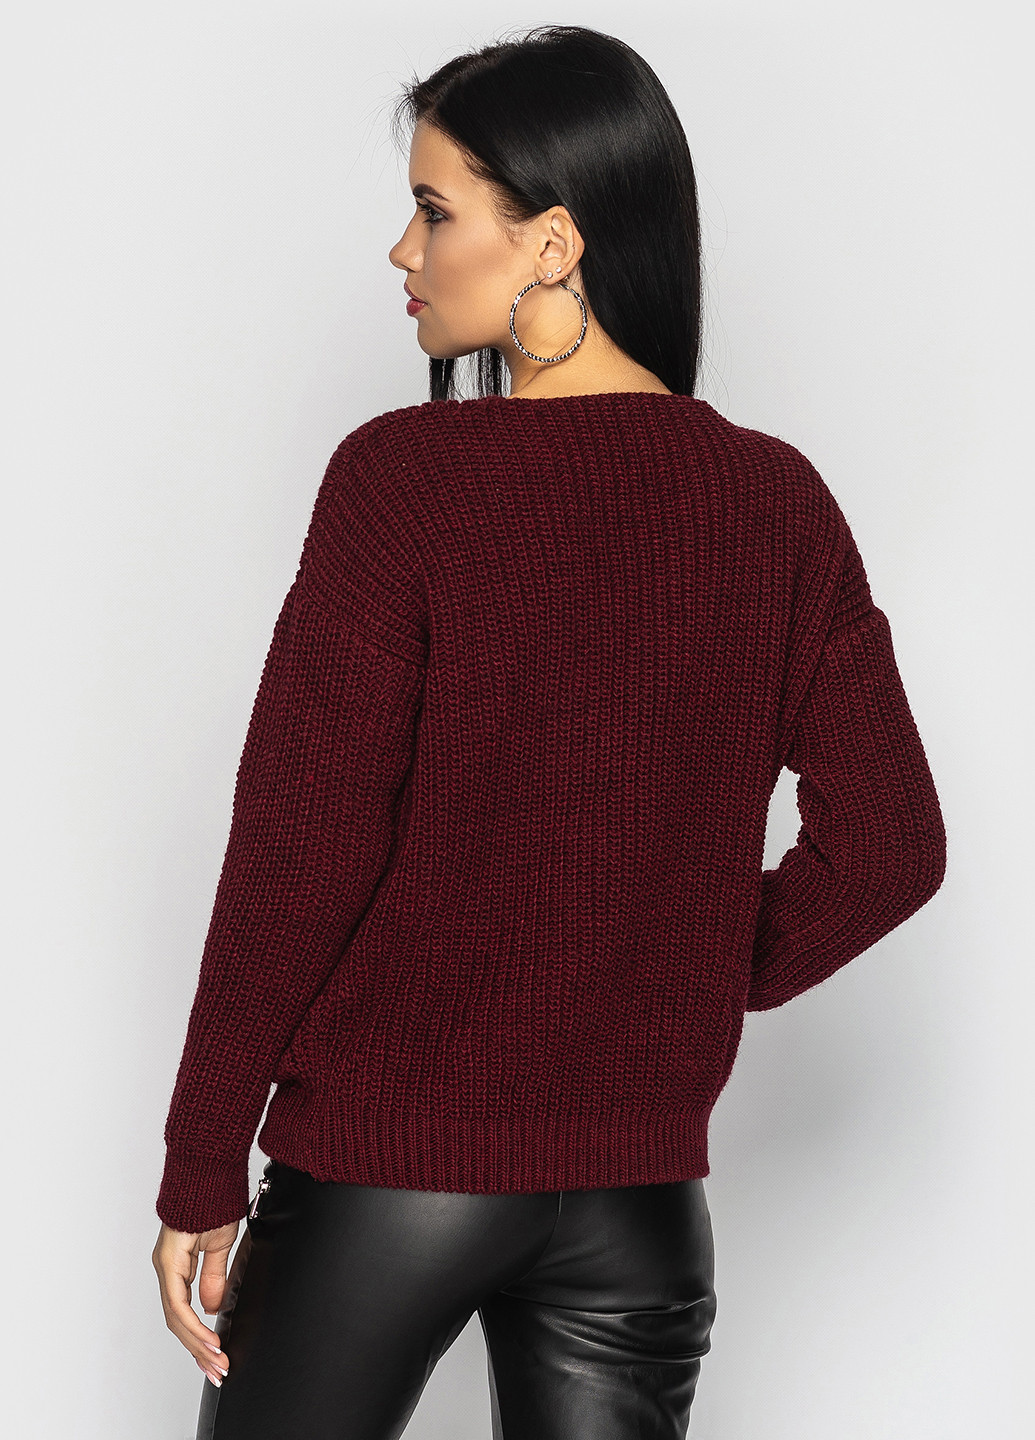 Бордовый демисезонный пуловер пуловер Larionoff